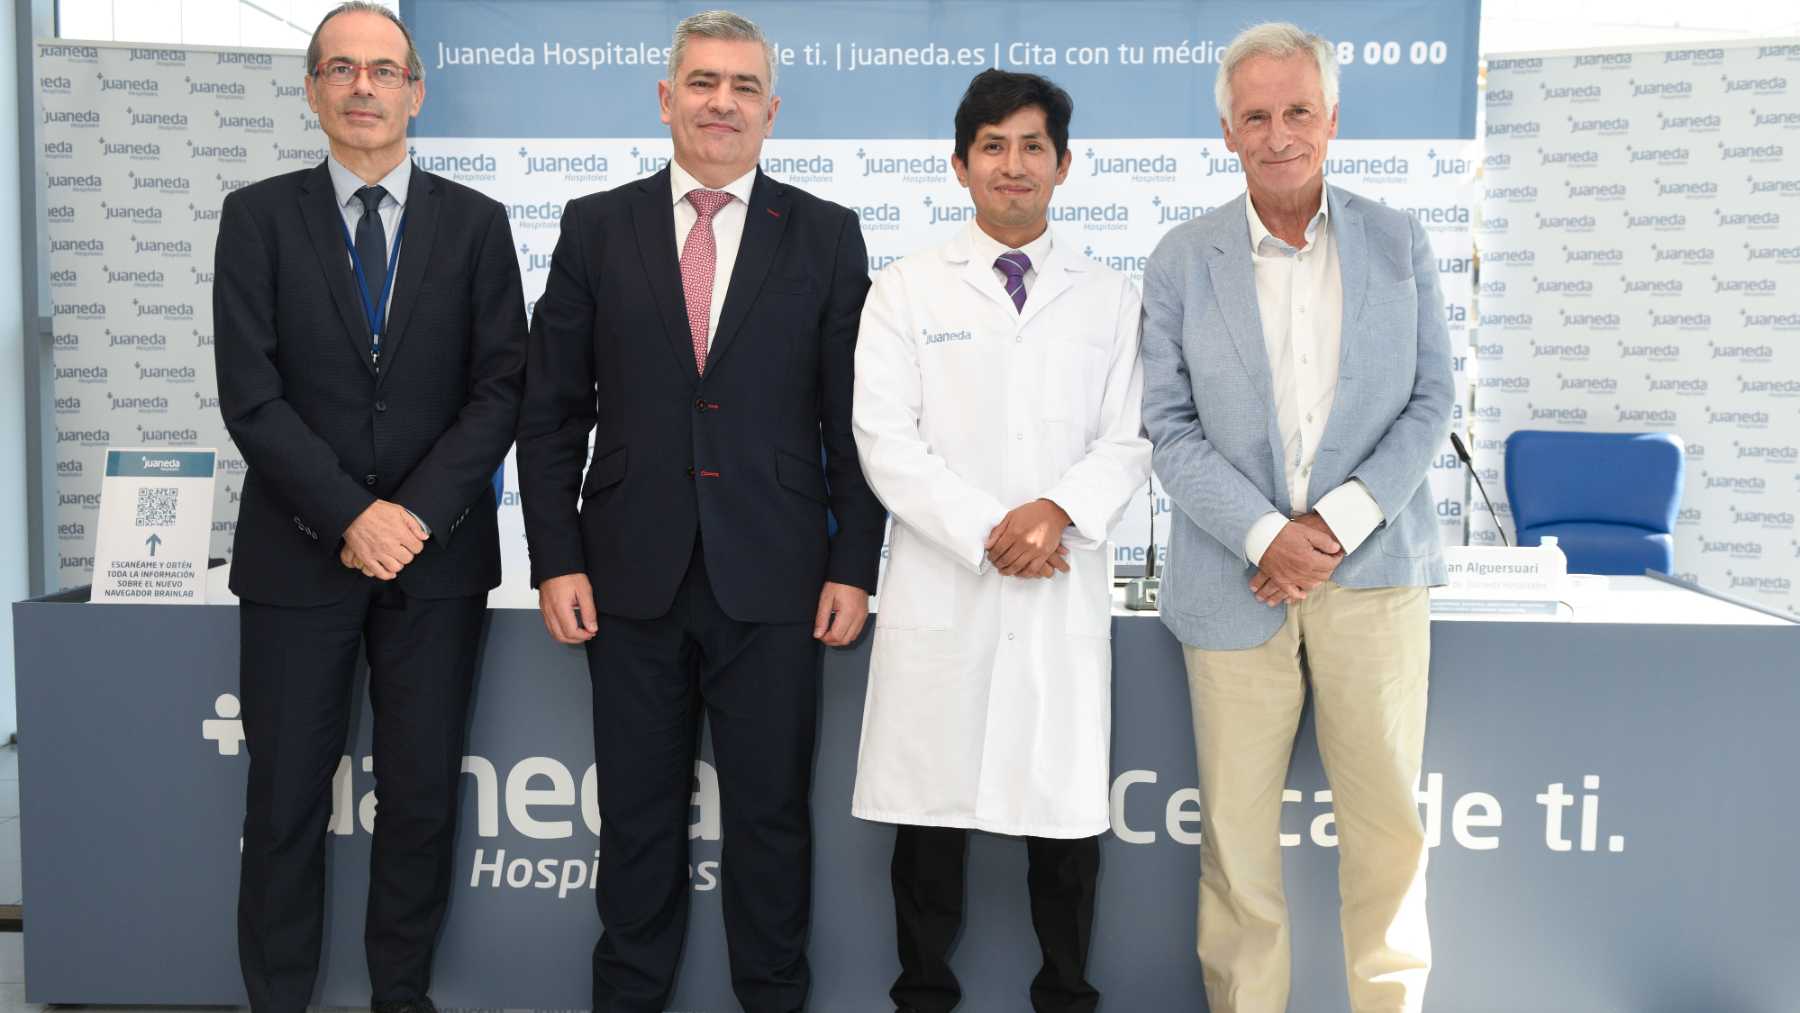 Francisco Marí, gerente de Clínica Juaneda; Rodrigo Martín, CEO de Juaneda Hospitales; Alexis Palpan, neurocirujano y Juan Alguersuari, presidente de Juaneda Hospitales. JUANEDA HOSPITALES